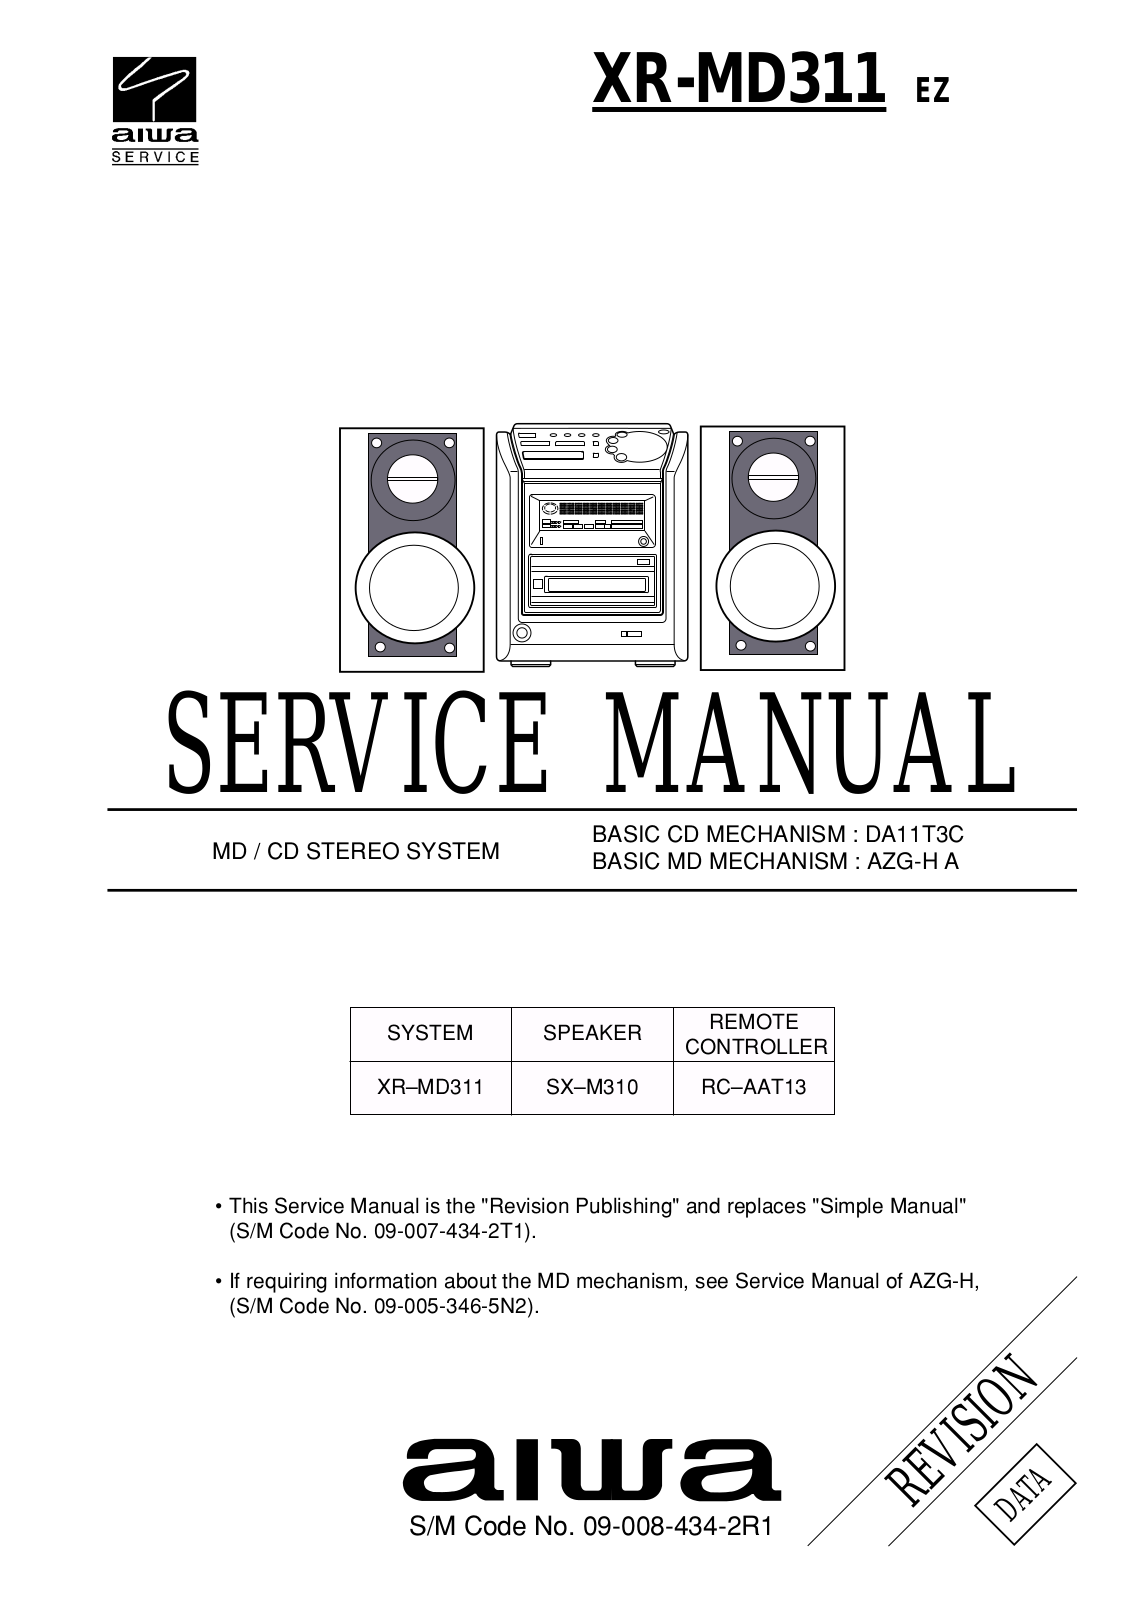 Aiwa XR-MD311 Service Manual